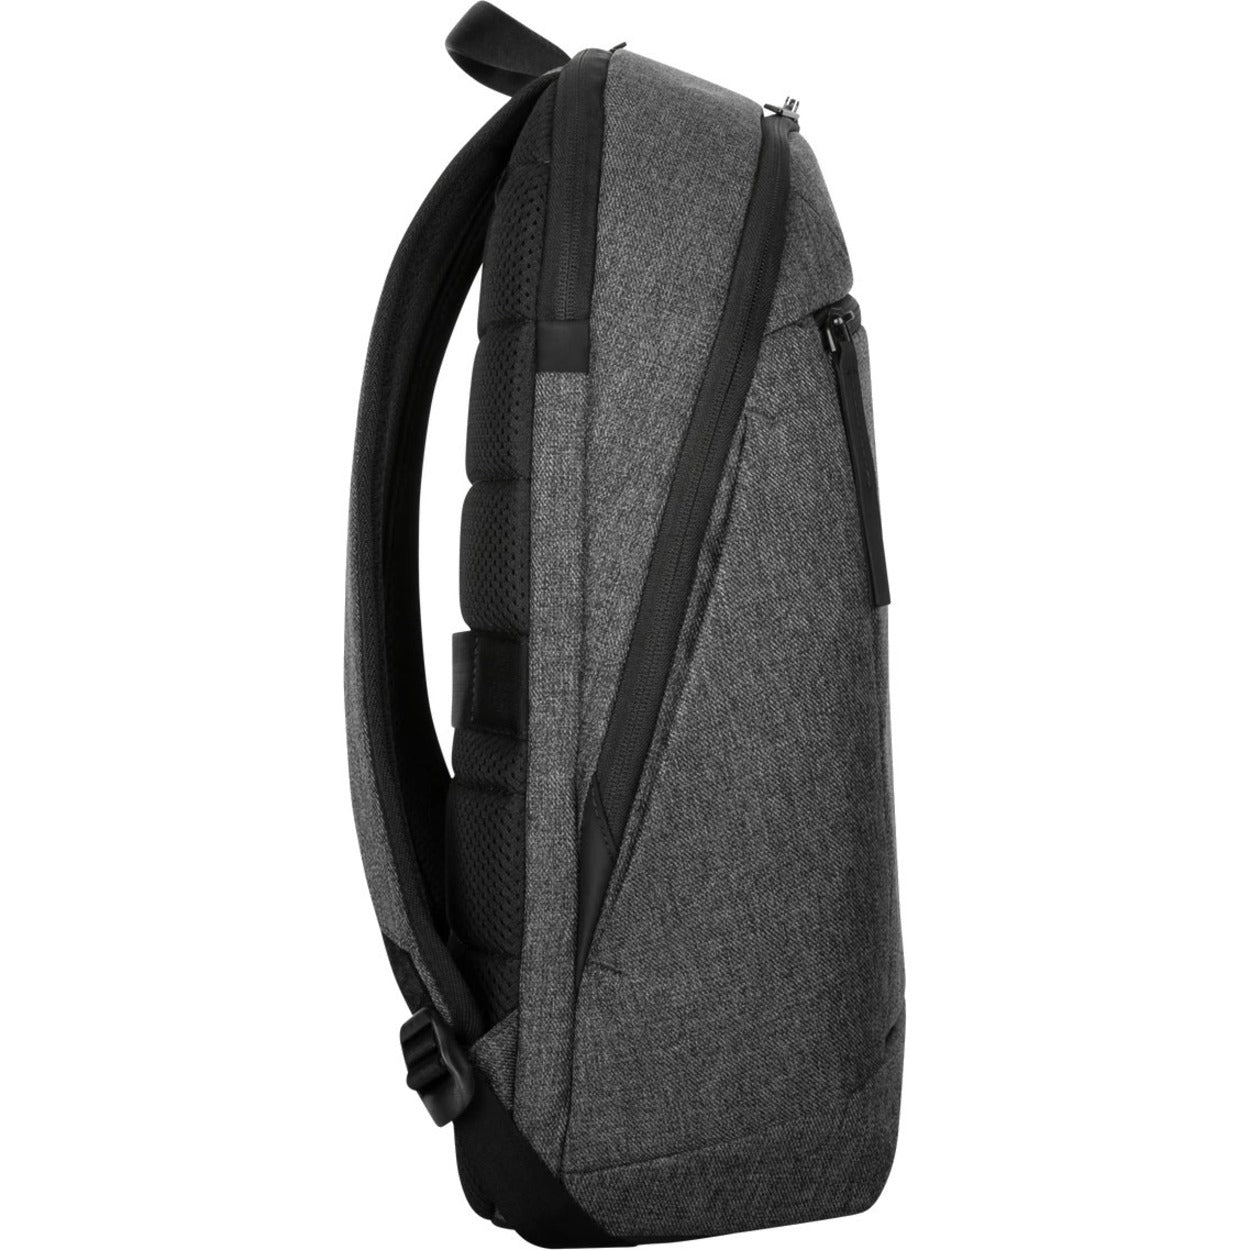 Targus Invoke Carrying Case (Backpack) for 15.6" Notebook - Gray